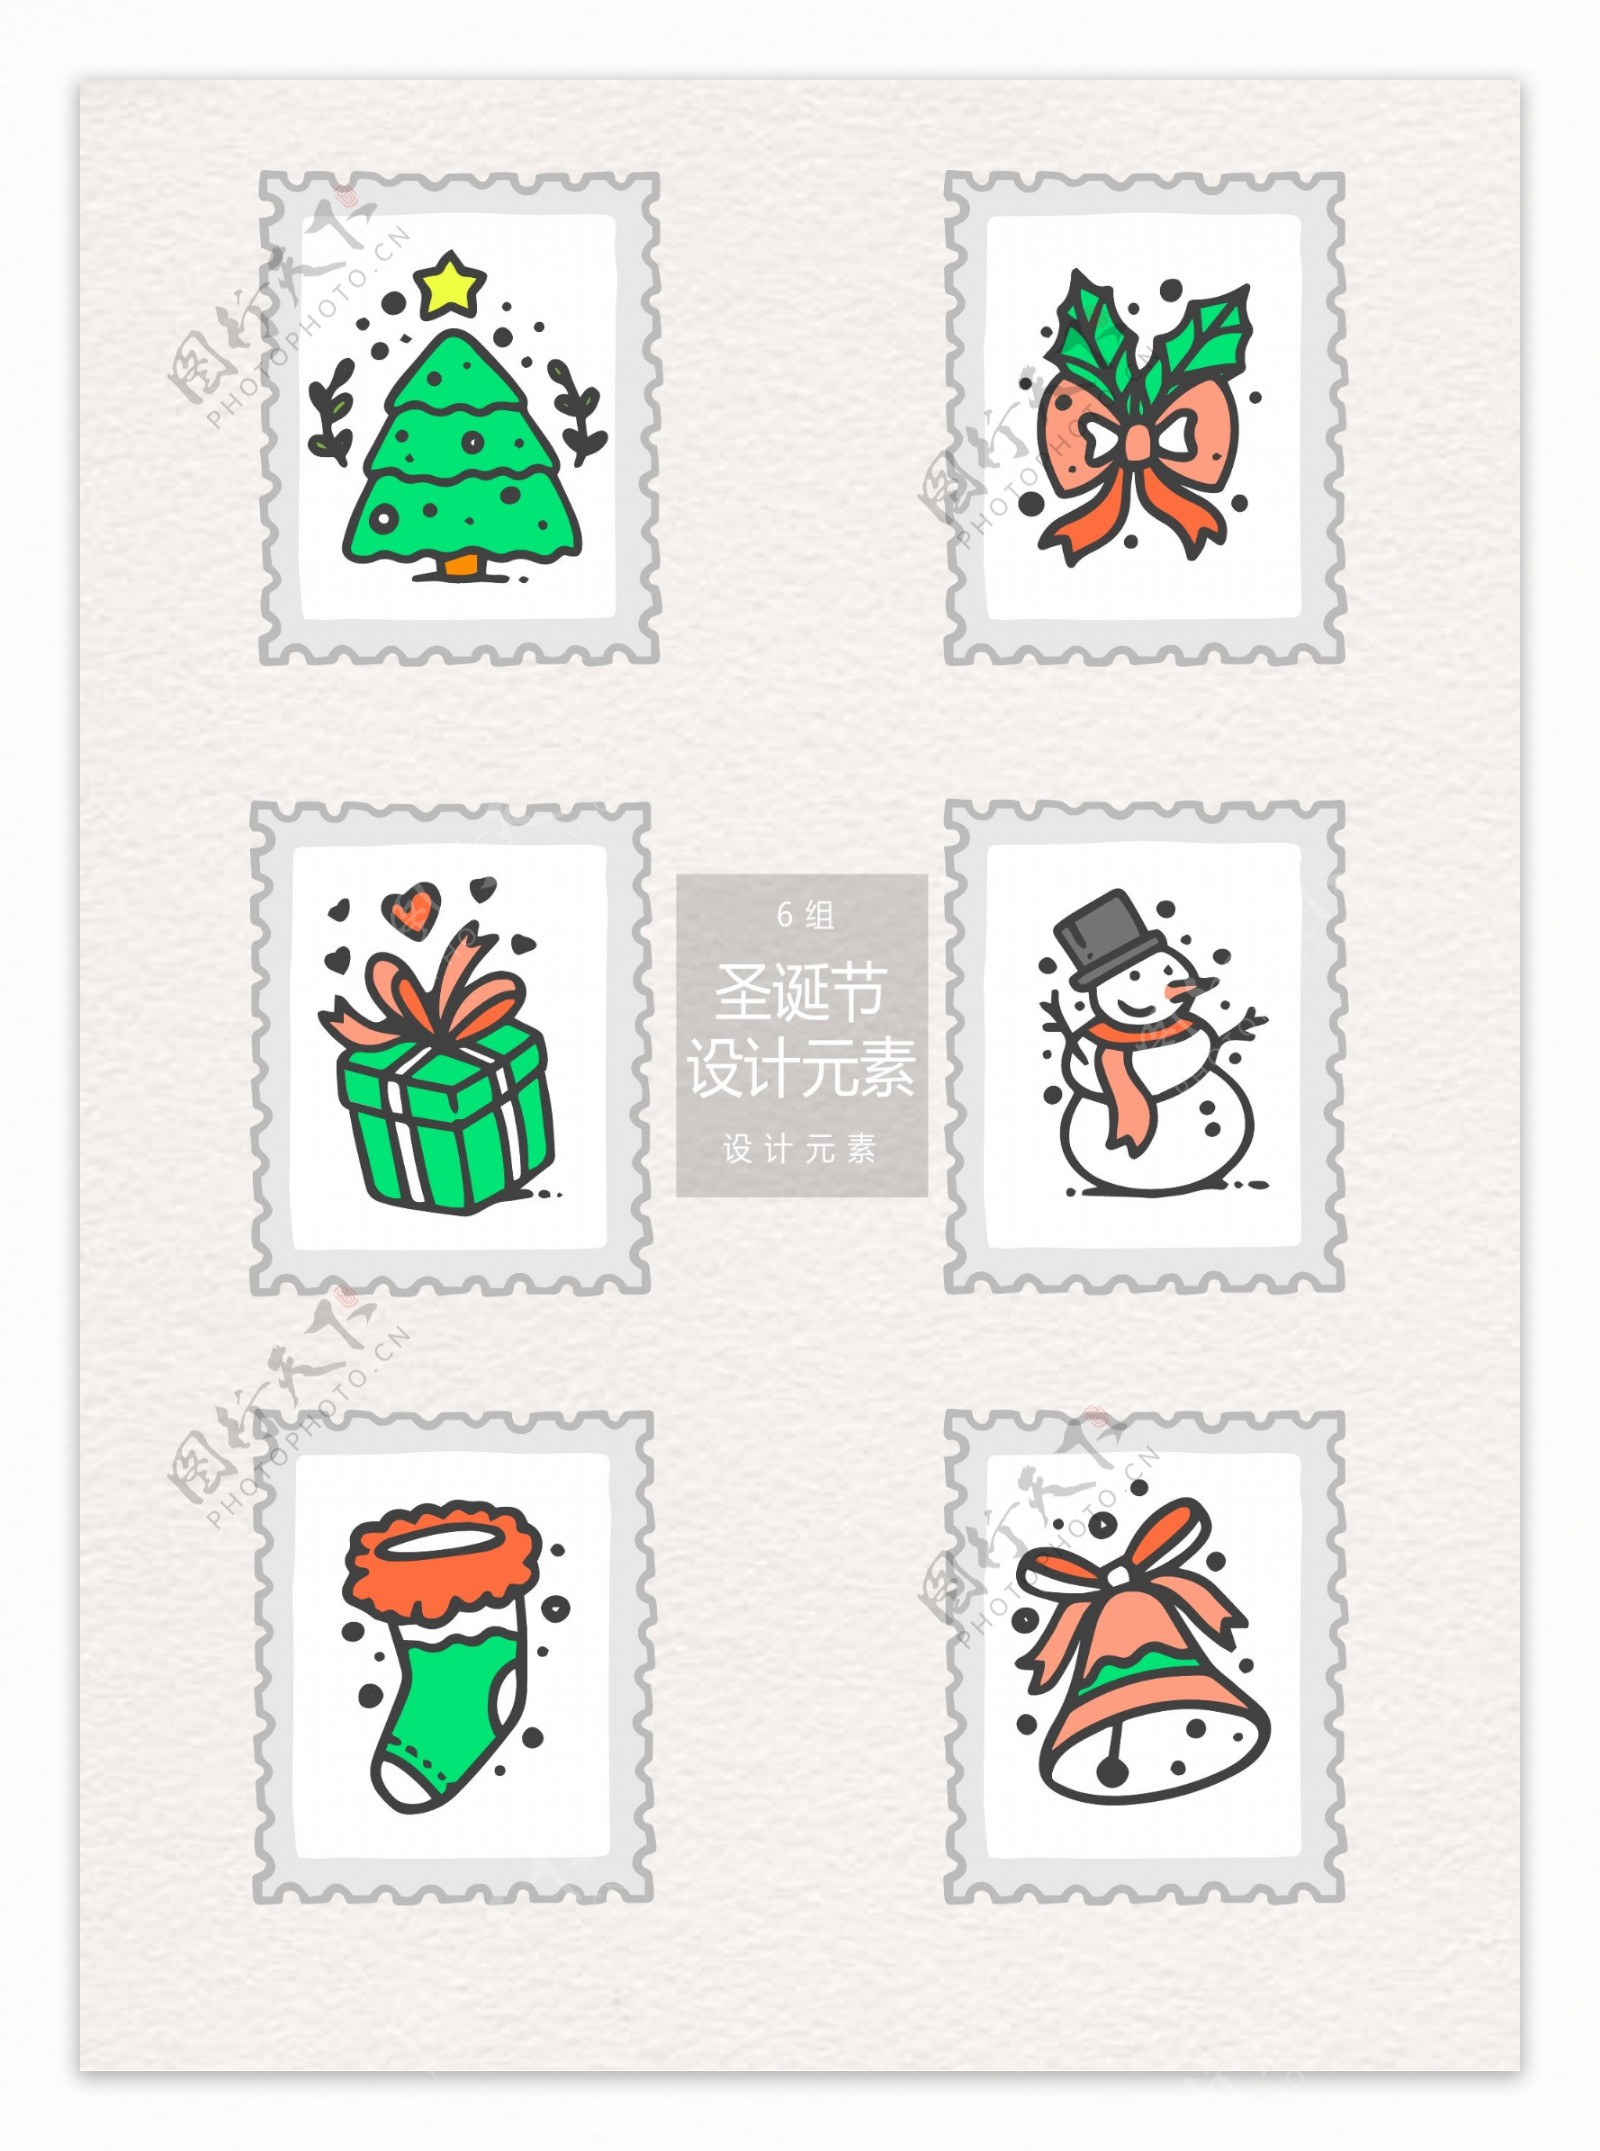 手绘圣诞节邮票标签设计元素